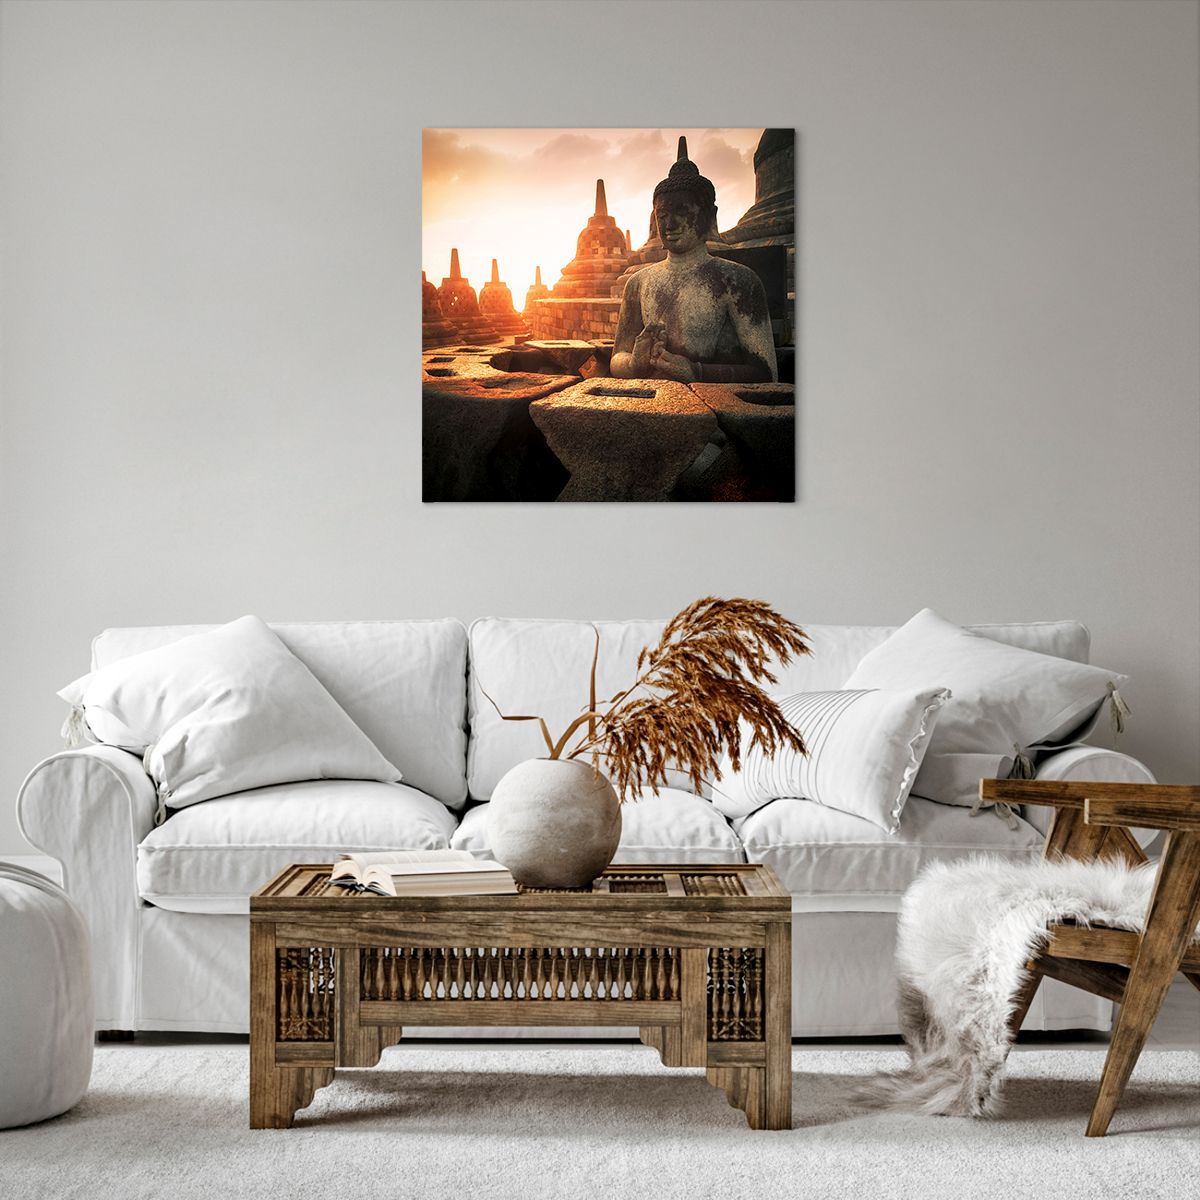 Impression sur toile Asie, Impression sur toile Bouddha, Impression sur toile Borobudur, Impression sur toile Culture, Impression sur toile Méditation